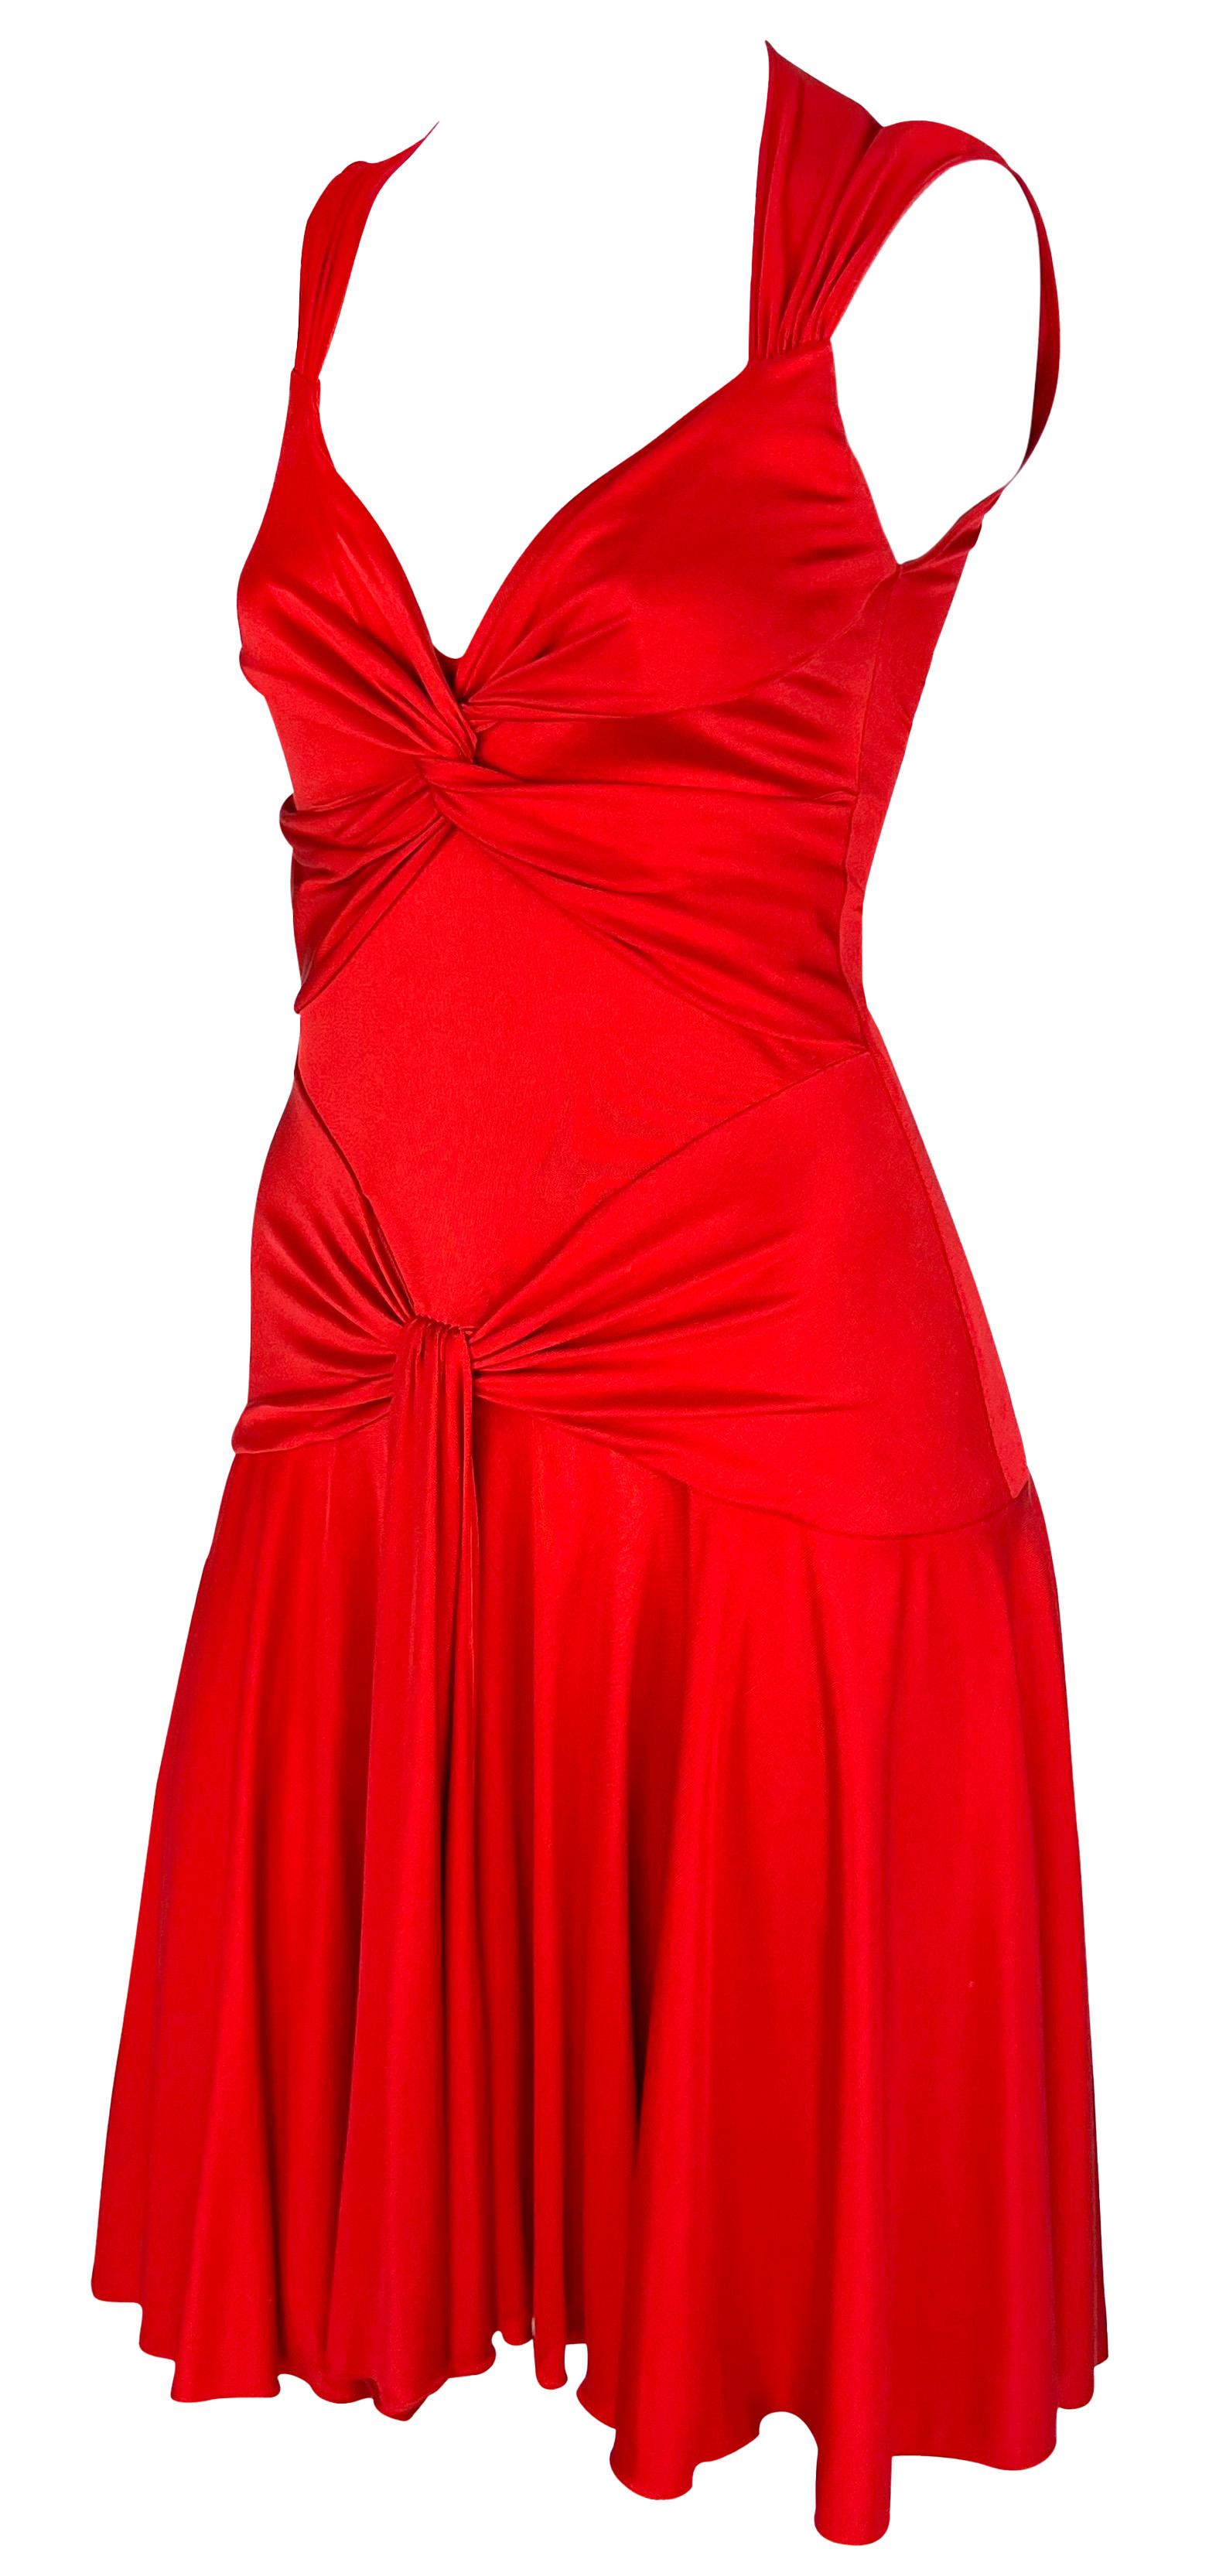 S/S 2004 Valentino Garavani Runway Red Silk Bodycon Flare Mini Dress For Sale 1